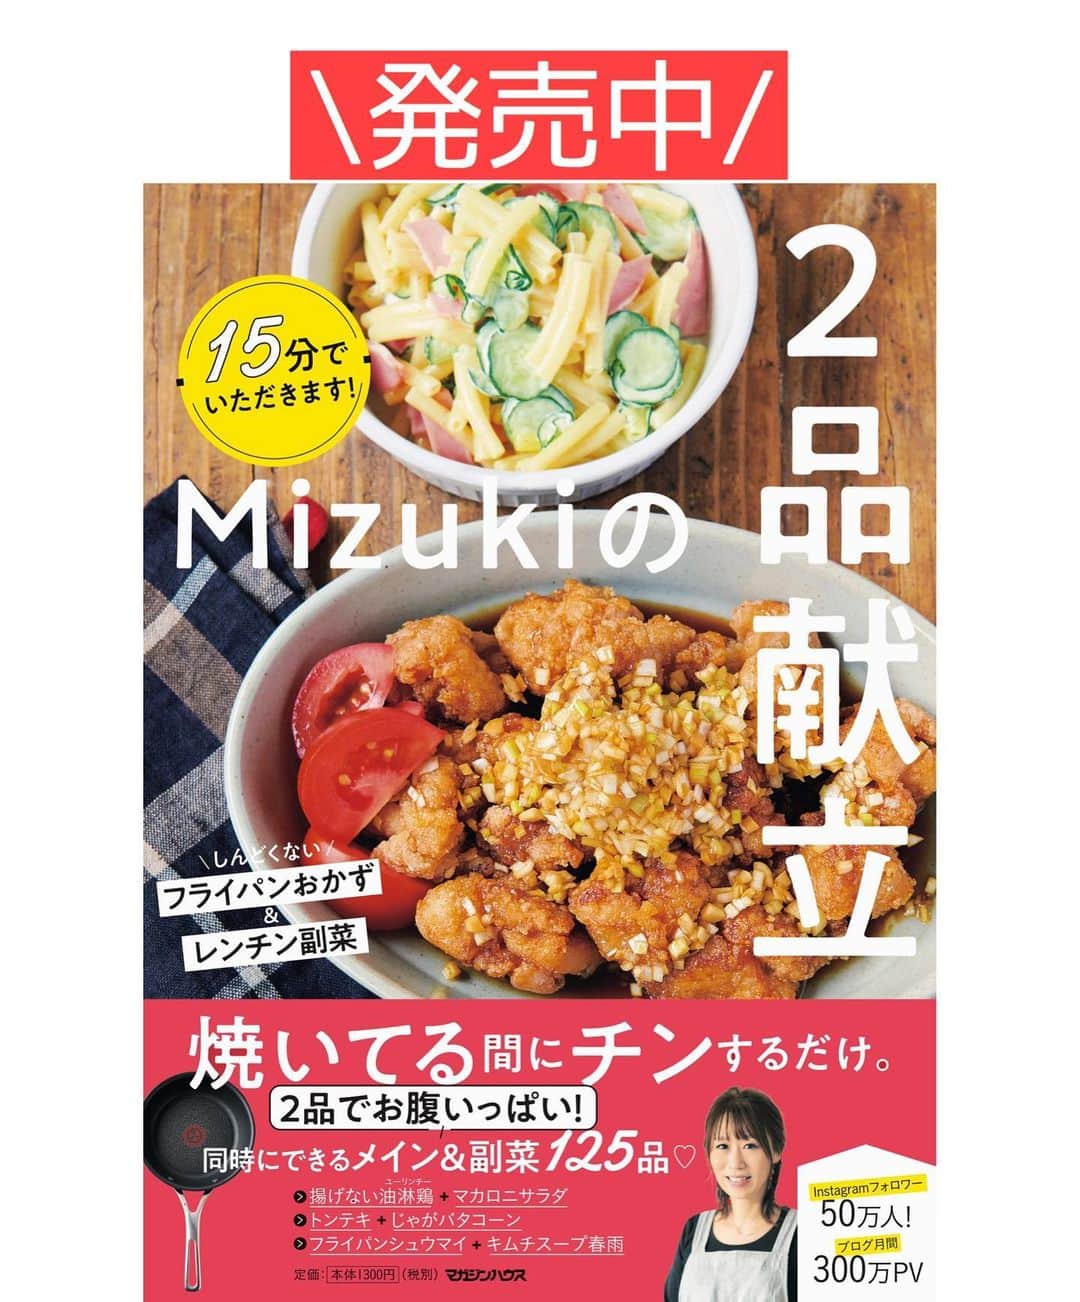 Mizuki【料理ブロガー・簡単レシピ】さんのインスタグラム写真 - (Mizuki【料理ブロガー・簡単レシピ】Instagram)「・﻿ 【#レシピ 】ーーーーーーーーー﻿ ♡フライパンローストビーフ♡﻿ ーーーーーーーーーーーーーーー﻿ ﻿ ﻿ ﻿ おはようございます(*^^*)﻿ ﻿ 今日ご紹介させていただくのは﻿ \フライパンで作るローストビーフ/﻿ ﻿ 特別な道具や調味料を使わなくても﻿ 簡単に美味しく作れますよ♡﻿ 今回はソースもお手軽に﻿ 和風ベースに仕上げました(*´艸`)﻿ ﻿ ローストビーフは見た目も華やかで﻿ クリスマスディナーや﻿ 年末年始のメニューにもおすすめです♩﻿ ﻿ ﻿ ﻿ ＿＿＿＿＿＿＿＿＿＿＿＿＿＿＿＿＿＿＿＿﻿ 【作りやすい量】﻿ 牛ももかたまり肉...400g﻿ ●塩...小2/3﻿ ●粗挽き黒こしょう...適量﻿ ●にんにくすりおろし...1かけ分﻿ オリーブオイル...小2﻿ ☆醤油・酒・みりん...各大3﻿ ☆粒マスタード...大1﻿ ﻿ 1.牛肉は1時間程前に冷蔵庫から出して室温に戻し、表面に●を擦り込む。﻿ 2.フライパンにオリーブオイルを中火で熱して1を入れ、1面につき2〜3分ずつ焼いて全体に焼き色を付ける。(全6面)﻿ 3.火を止め、熱い内にアルミホイルで二重に包み、フライパンに戻して蓋をして20分置く。(余熱で火を通します)﻿ 4.☆をフライパンに入れて中火にかけ、混ぜながら少し煮詰めてソースを作る。3を薄切りにして器に盛り、ソースをかける。﻿ ￣￣￣￣￣￣￣￣￣￣￣￣￣￣￣￣￣￣￣￣﻿ ﻿ ﻿ ﻿ 《ポイント》﻿ ♦︎牛肉は新鮮なものを使用して下さい☆必ず室温に戻し、焼く直前に●を擦り込みます☆﻿ ♦︎牛肉は表面(全6面)にしっかり焼き色が付くように焼いて下さい♩﻿ ♦︎工程3では火を止めたフライパンに牛肉を戻し入れ、余熱で火を通します♩﻿ ♦︎私が使用した牛肉は厚み4〜5cmのものです♩ ♦︎切ったばかりは淡く落ち着いた赤色ですが、空気に触れると鮮やかな色になってきます♩﻿ ﻿ ﻿ ﻿ ﻿ ﻿ ﻿ ﻿ ﻿ 📕新刊予約開始しました📕﻿ 【ラクしておいしい！#1品晩ごはん 】﻿ ￣￣￣￣￣￣￣￣￣￣￣￣￣￣￣￣￣﻿ 私たちだってヘトヘトな日がある•••﻿ 毎日何品も作っていられない•••﻿ もうごはんに悩みたくない😢﻿ そう思うことってありませんか？﻿ そんな時、1品ごはんはいかがでしょう？﻿ というご提案です✨﻿ ﻿ ﻿ 【1品ごはん】は﻿ 副菜いらずで全てがシンプル！﻿ ￣￣￣￣￣￣￣￣￣￣￣￣￣￣￣￣￣￣﻿ 一品つくるだけでいいから﻿ 献立を考えなくてよし！﻿ ￣￣￣￣￣￣￣￣￣￣￣￣￣￣￣￣￣￣﻿ 悩まない、疲れない、﻿ 気力や時間がなくてもなんとかなる！﻿ ￣￣￣￣￣￣￣￣￣￣￣￣￣￣￣￣￣￣﻿ そんな頼りになる﻿ 便利なお助けごはんです☺️💕﻿ (ハイライトに🔗貼っています✨)﻿ ￣￣￣￣￣￣￣￣￣￣￣￣￣￣￣￣￣﻿ ﻿ ﻿ ﻿ ﻿ ﻿ ⭐️発売中⭐️﻿ ＿＿＿＿＿＿＿＿＿＿＿＿＿＿＿＿＿＿﻿ しんどくない献立、考えました♩﻿ \15分でいただきます/﻿ 📕#Mizukiの2品献立 📕﻿ ﻿ 和食をもっとカジュアルに♩﻿ \毎日のごはんがラクになる/﻿ 📘#Mizukiの今どき和食 📘﻿ ﻿ ホケミレシピの決定版♩﻿ \はじめてでも失敗しない/﻿ 📙#ホットケーキミックスのお菓子 📙﻿ ﻿ NHKまる得マガジンテキスト☆﻿ ホットケーキミックスで﻿ 📗絶品おやつ&意外なランチ📗﻿ ￣￣￣￣￣￣￣￣￣￣￣￣￣￣￣￣￣￣﻿ ﻿ ﻿ ﻿ ＿＿＿＿＿＿＿＿＿＿＿＿＿＿＿＿＿＿﻿ レシピを作って下さった際や﻿ レシピ本についてのご投稿には﻿ タグ付け( @mizuki_31cafe )して﻿ お知らせいただけると嬉しいです😊💕﻿ ￣￣￣￣￣￣￣￣￣￣￣￣￣￣￣￣￣￣﻿ ﻿ ﻿ ﻿ ﻿ #ローストビーフ#クリスマス#牛肉#Mizuki#簡単レシピ#時短レシピ#節約レシピ#料理#フーディーテーブル#マカロニメイト#おうちごはん#デリスタグラマー#料理好きな人と繋がりたい#食べ物#料理記録#おうちごはんlover#写真好きな人と繋がりたい#foodpic#cooking#recipe#lin_stagrammer#foodporn#yummy#f52grams#フライパンローストビーフm」12月15日 7時08分 - mizuki_31cafe